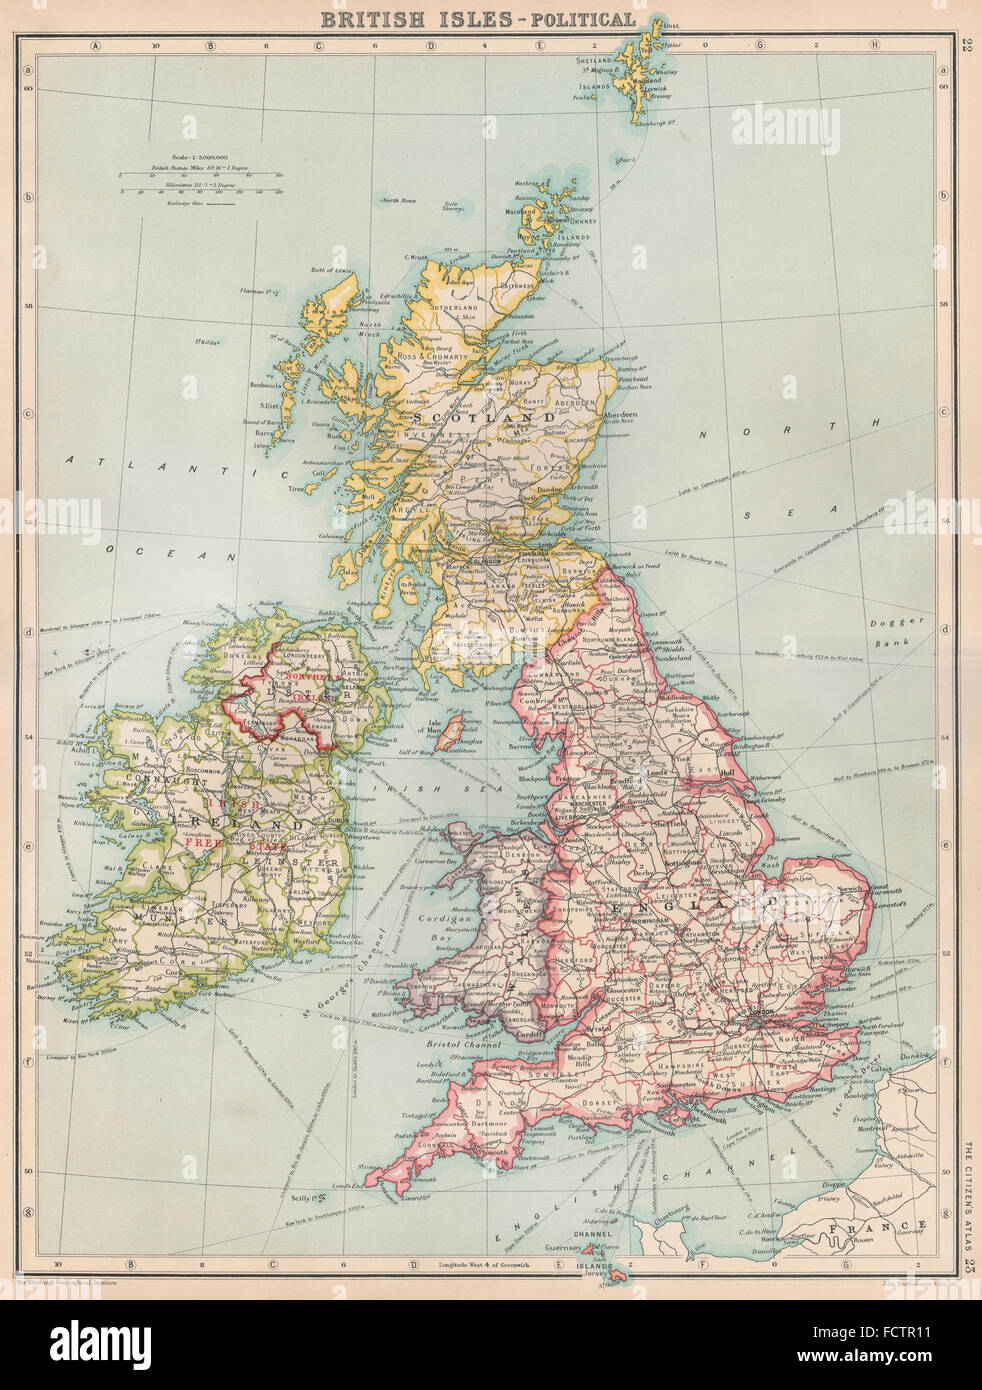 BRITISH ISLES-POLITICAL: Shows Irish Free State. BARTHOLOMEW, 1924 vintage map Stock Photo